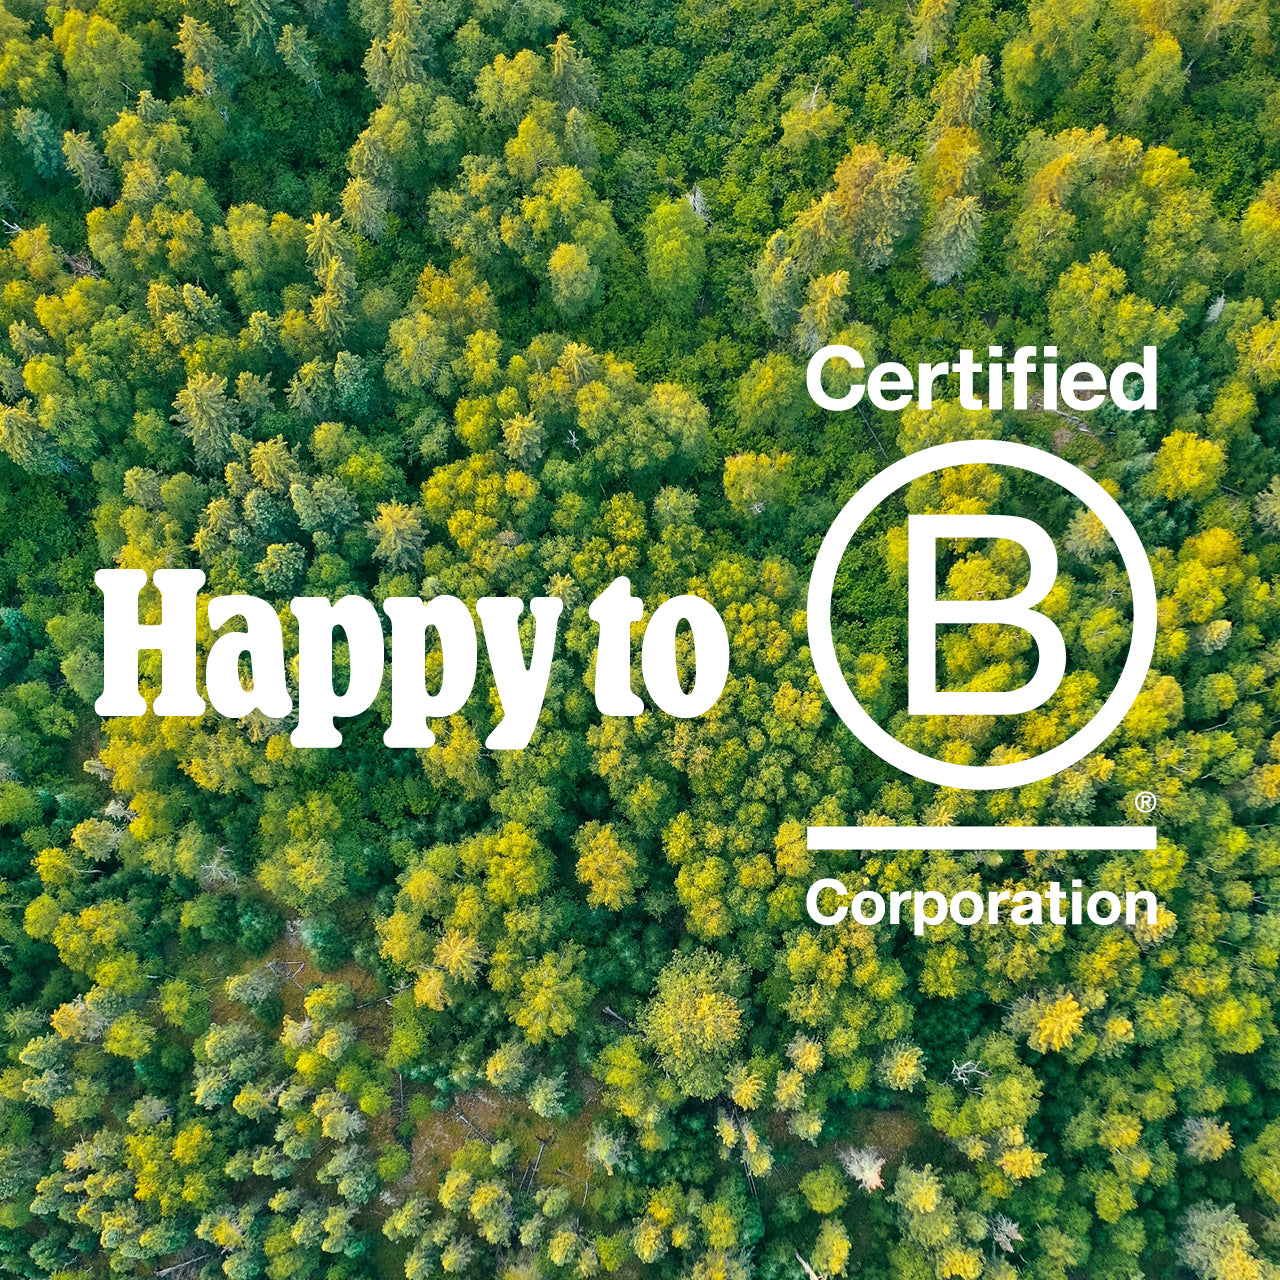 Planted ottiene la certificazione B Corp